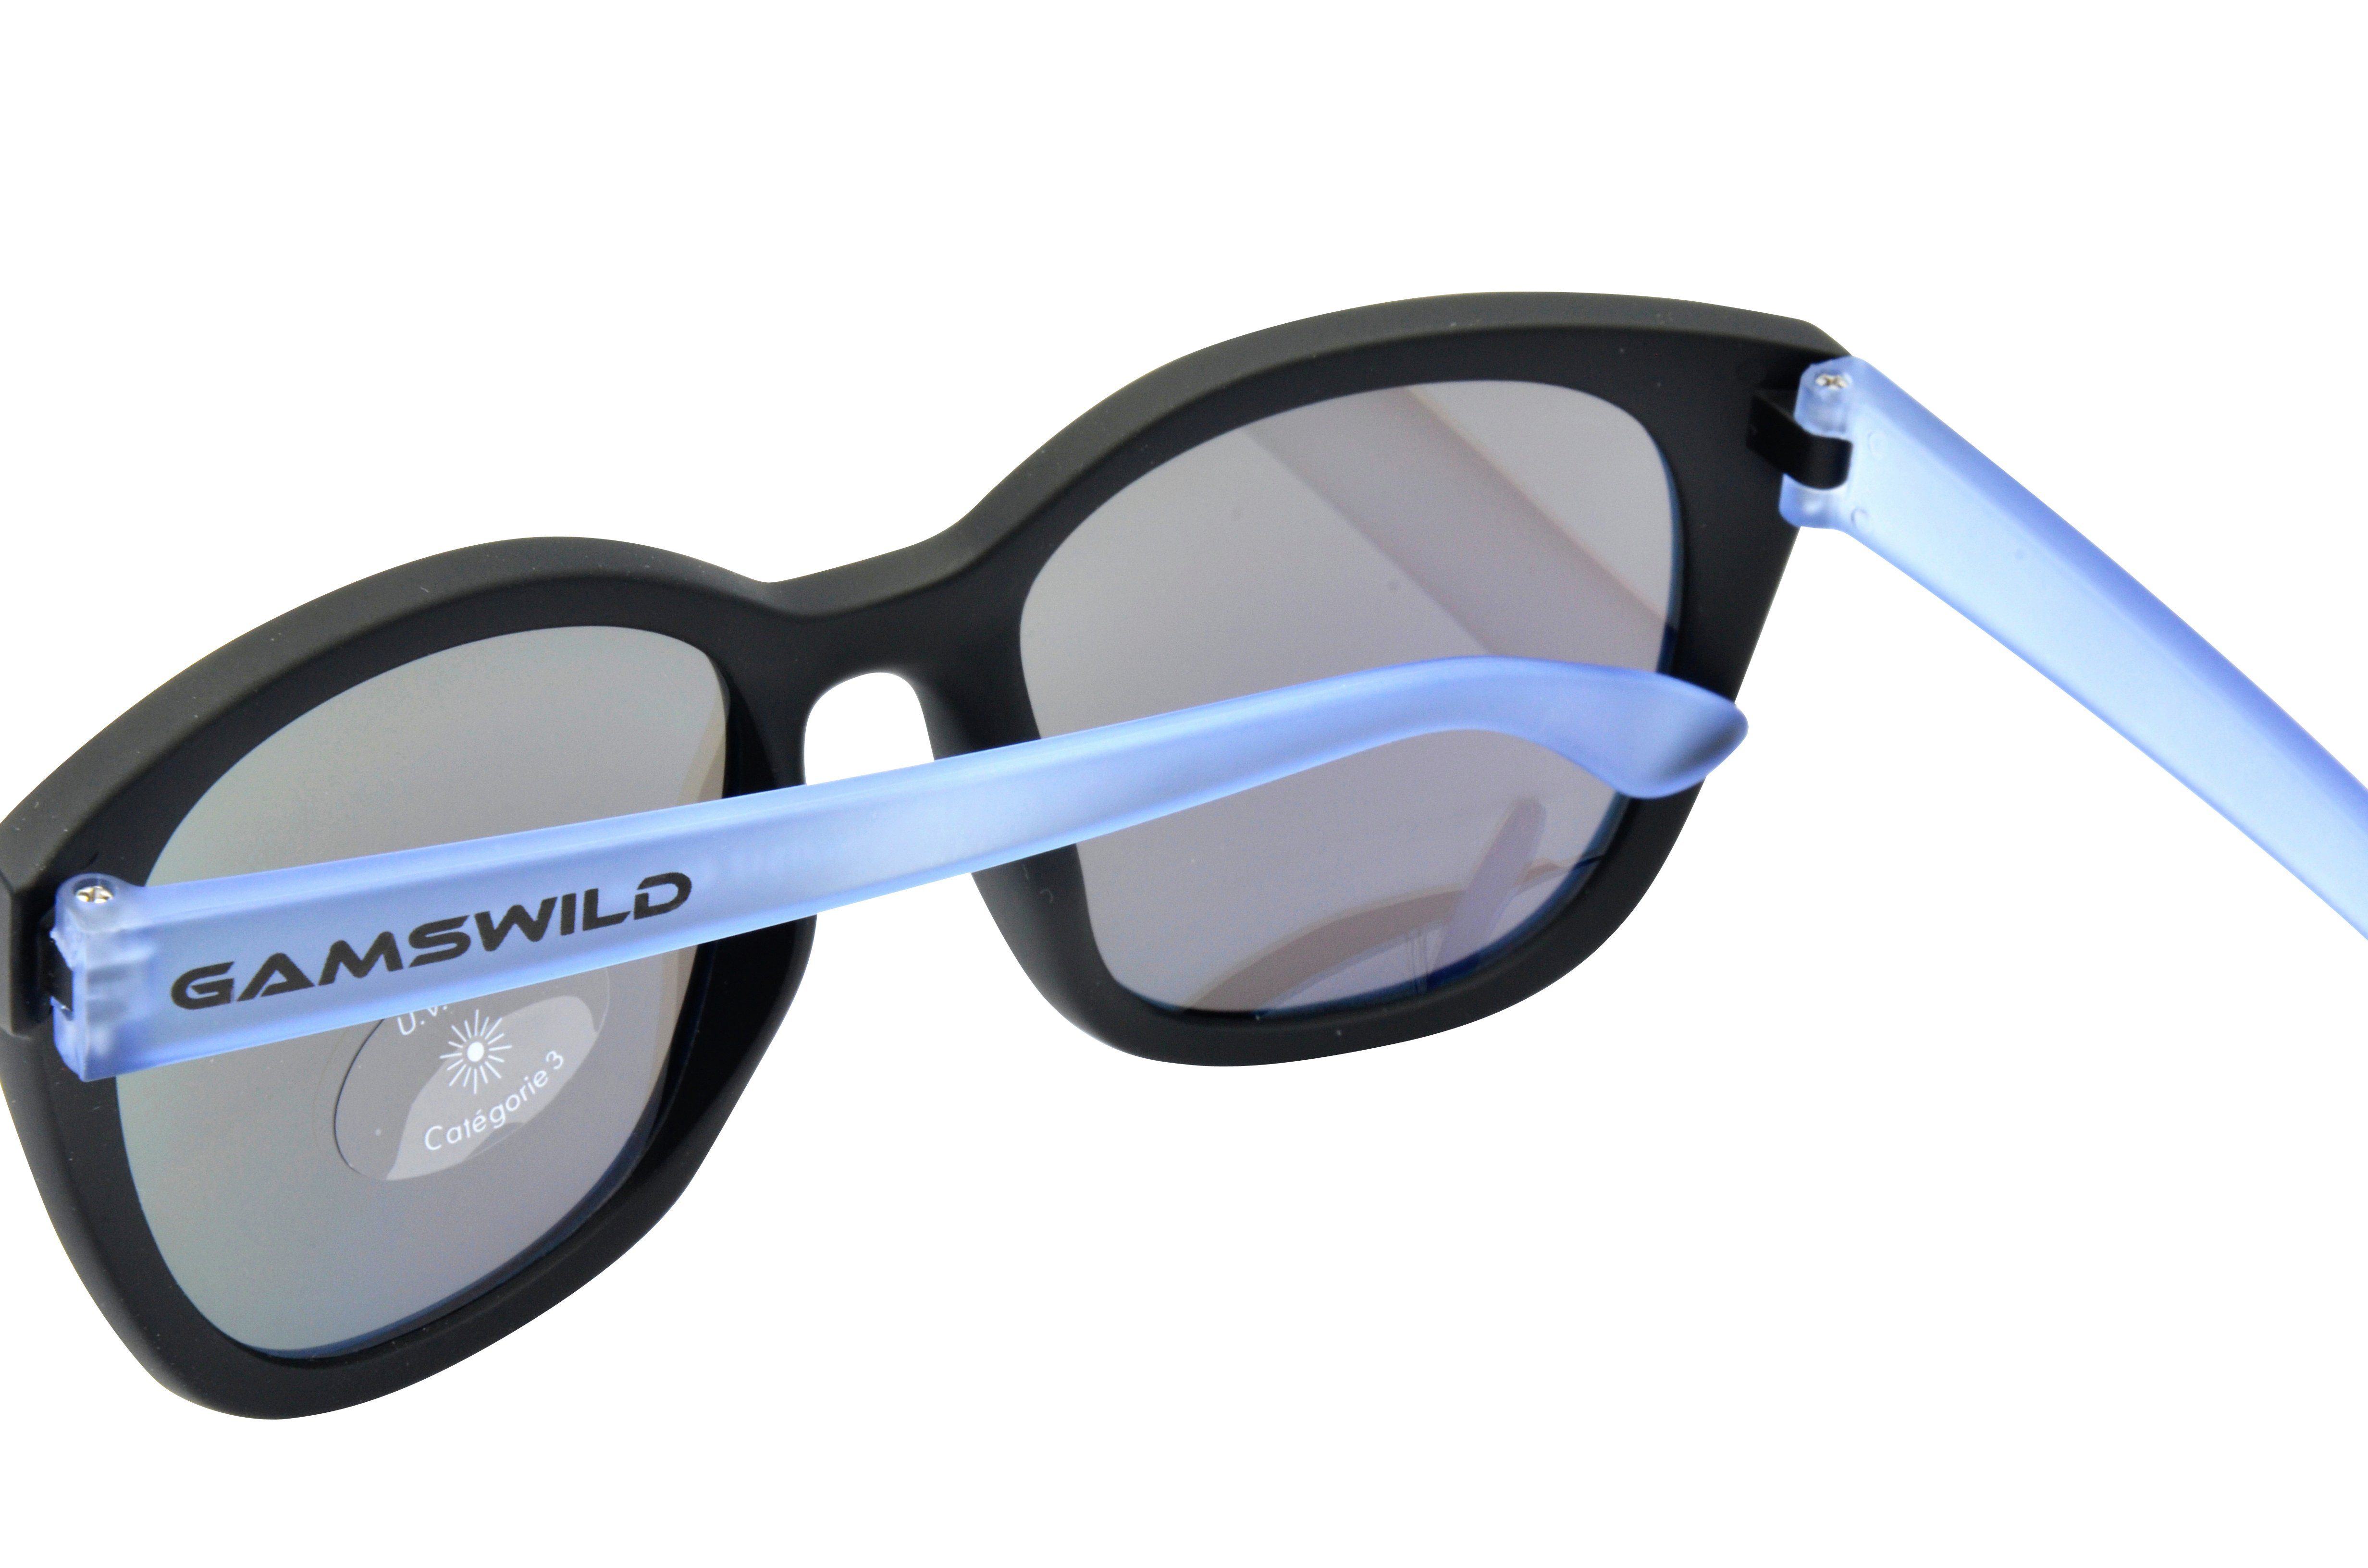 GAMSKIDS kids grau Jahre Rahmen Jugendbrille Unisex, halbtransparenter Damen Gamswild Sonnenbrille 8-18 Mädchen Kinderbrille pink, blau, WJ7517